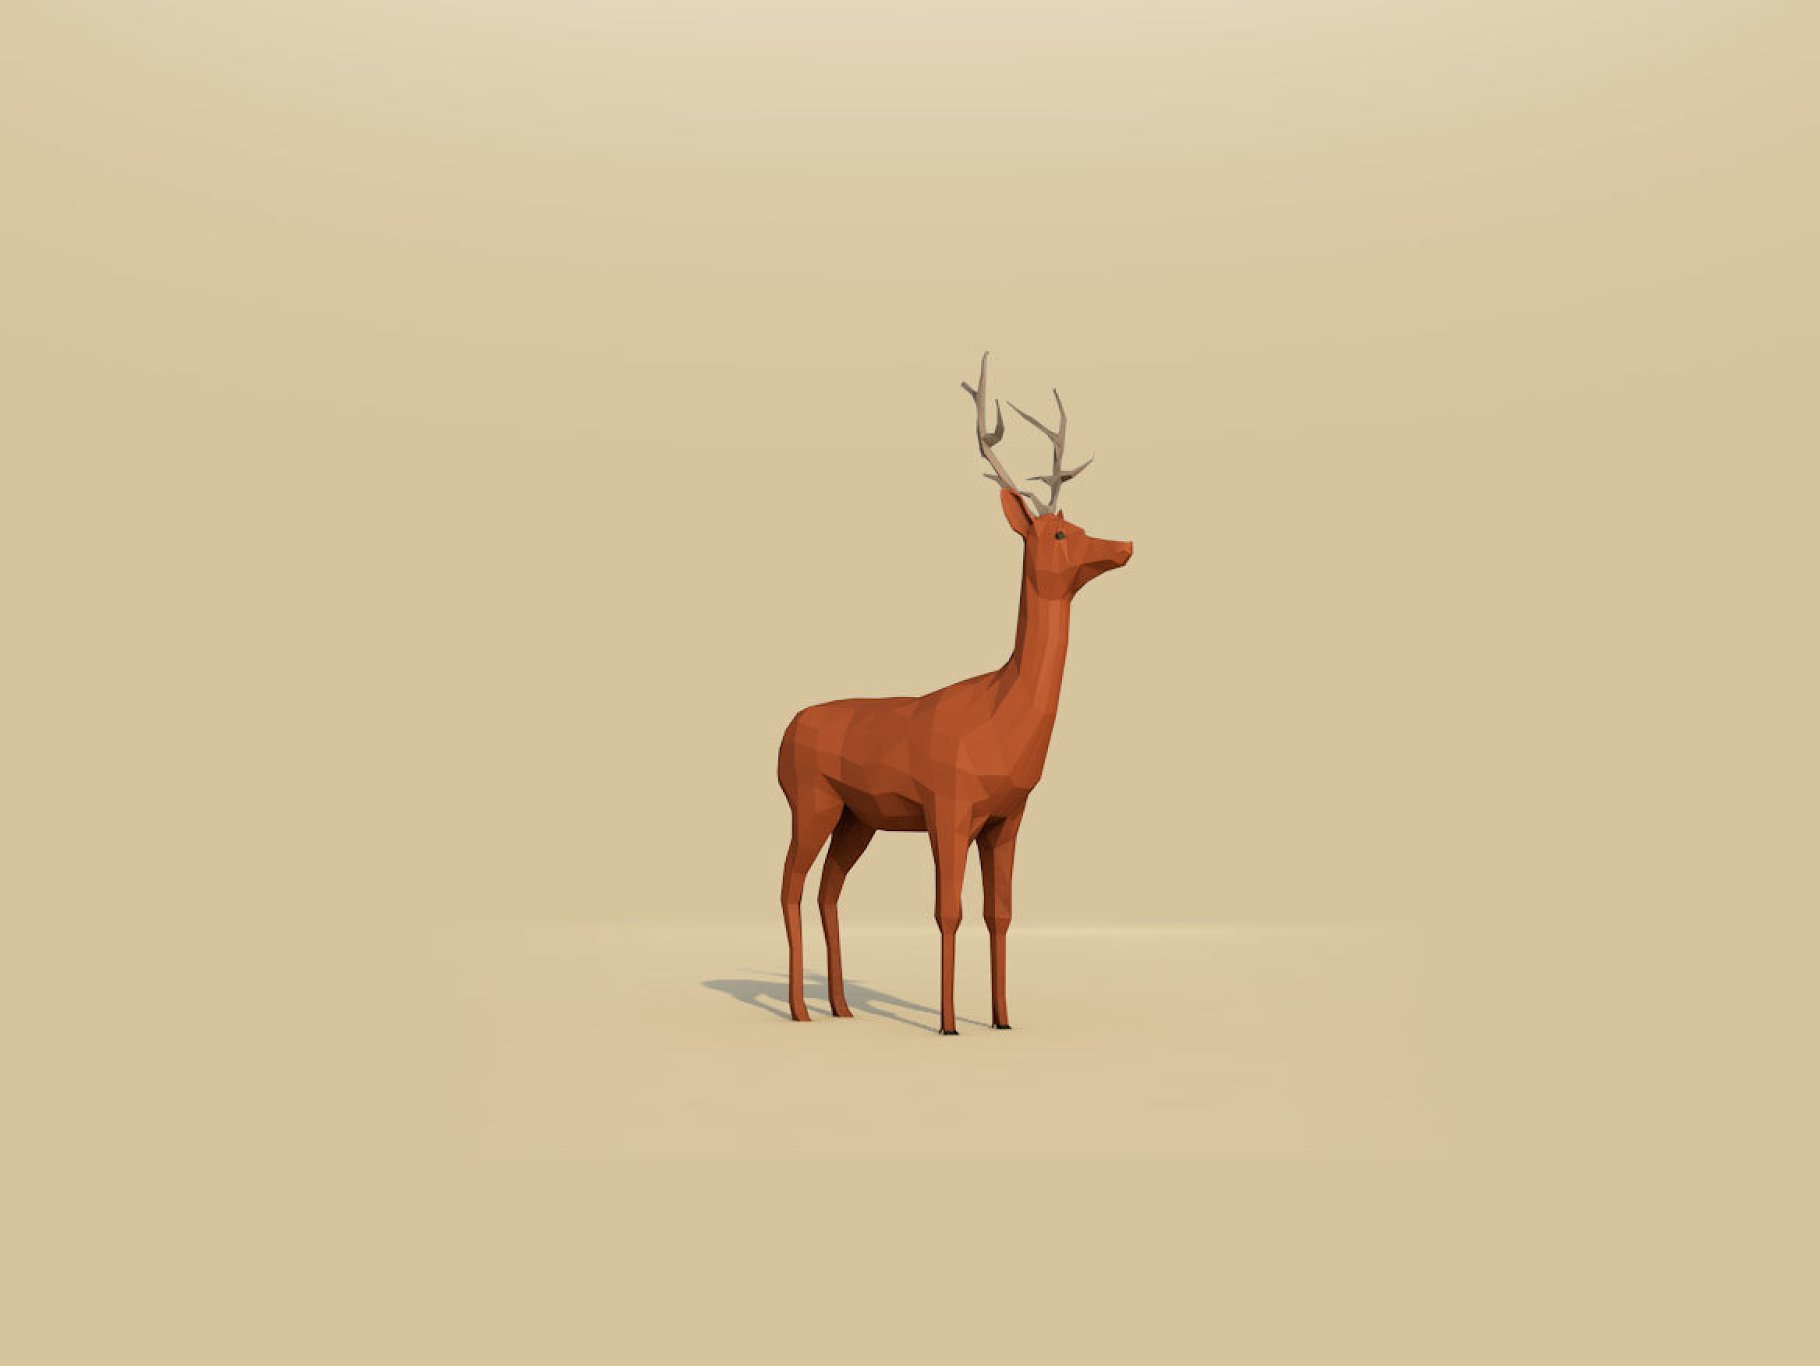 Mockup of a deer on a beige background,